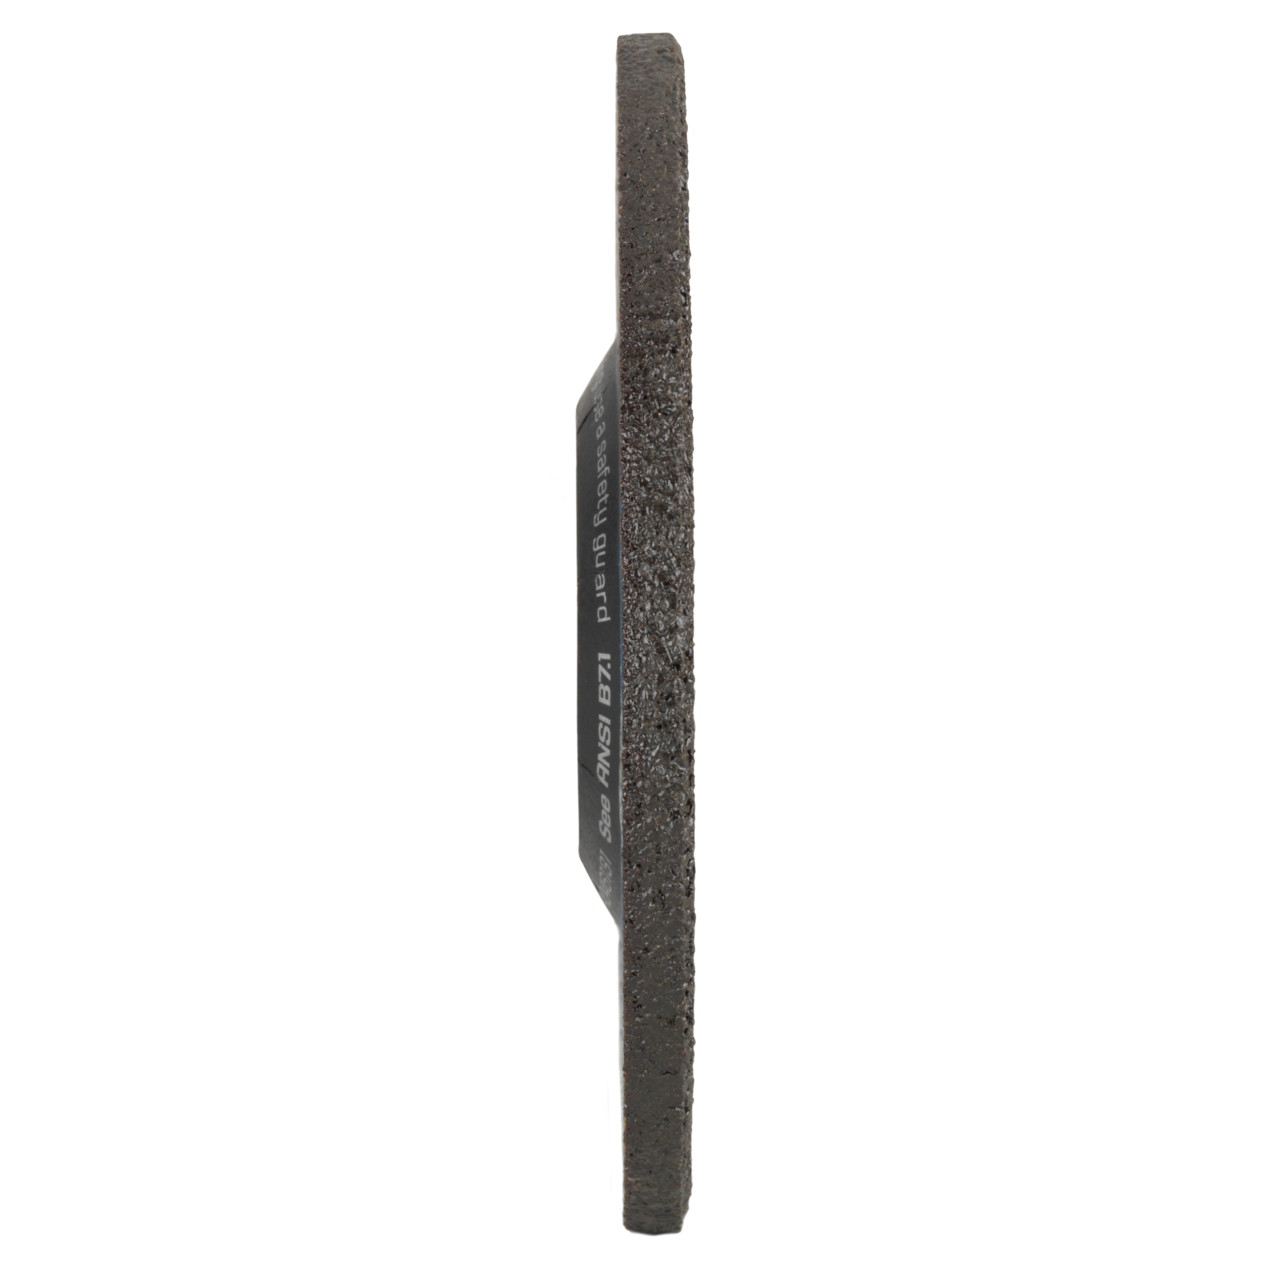 Tyrolit Grove slijpschijf DxUxH 115x7x22,23 2in1 voor staal en roestvrij staal, vorm: 27 - offset uitvoering, Art. 34046120